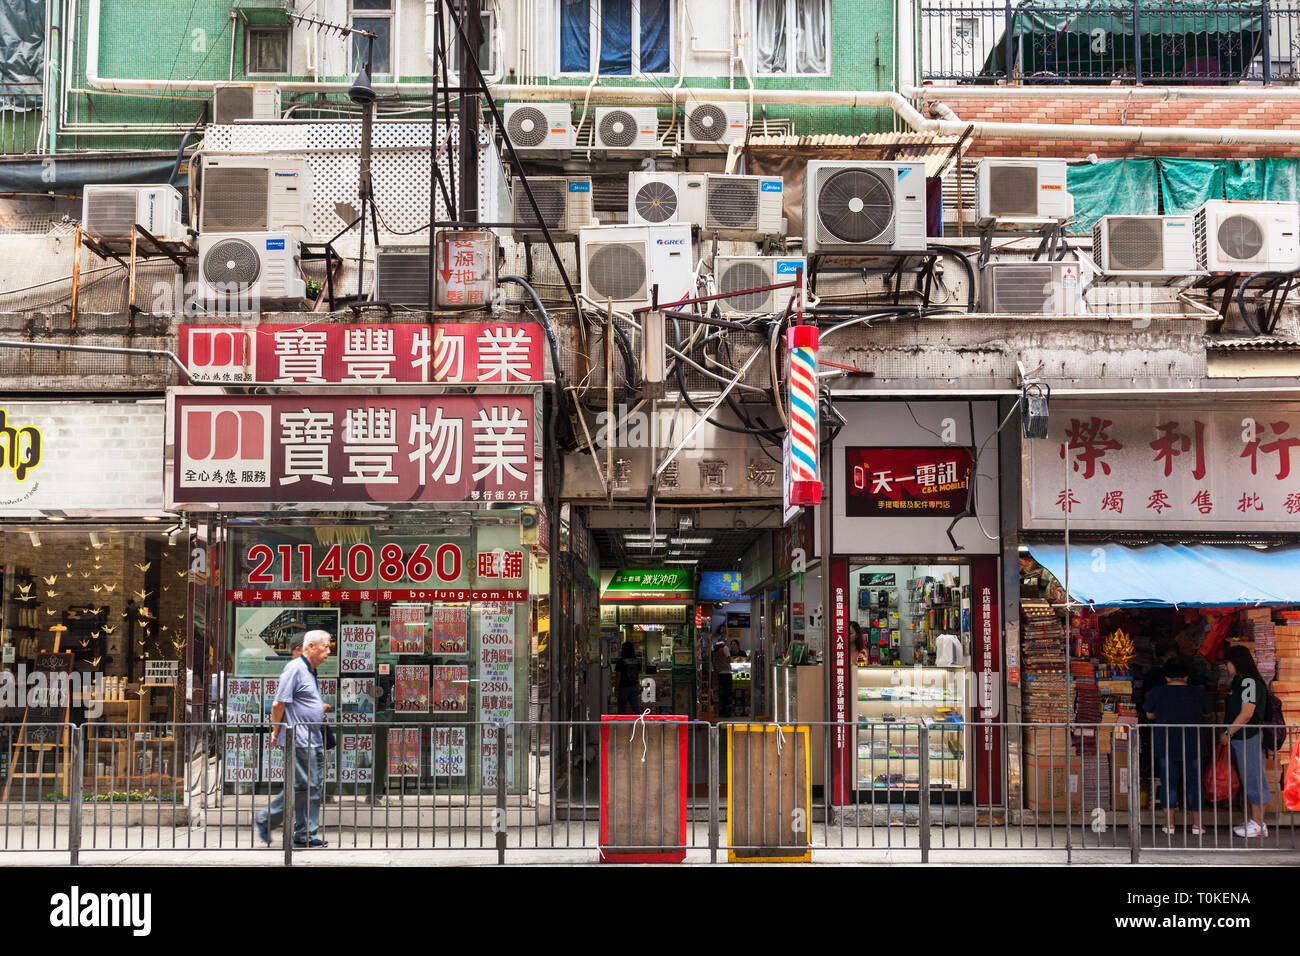 shops in Hong Kong Stock Photo